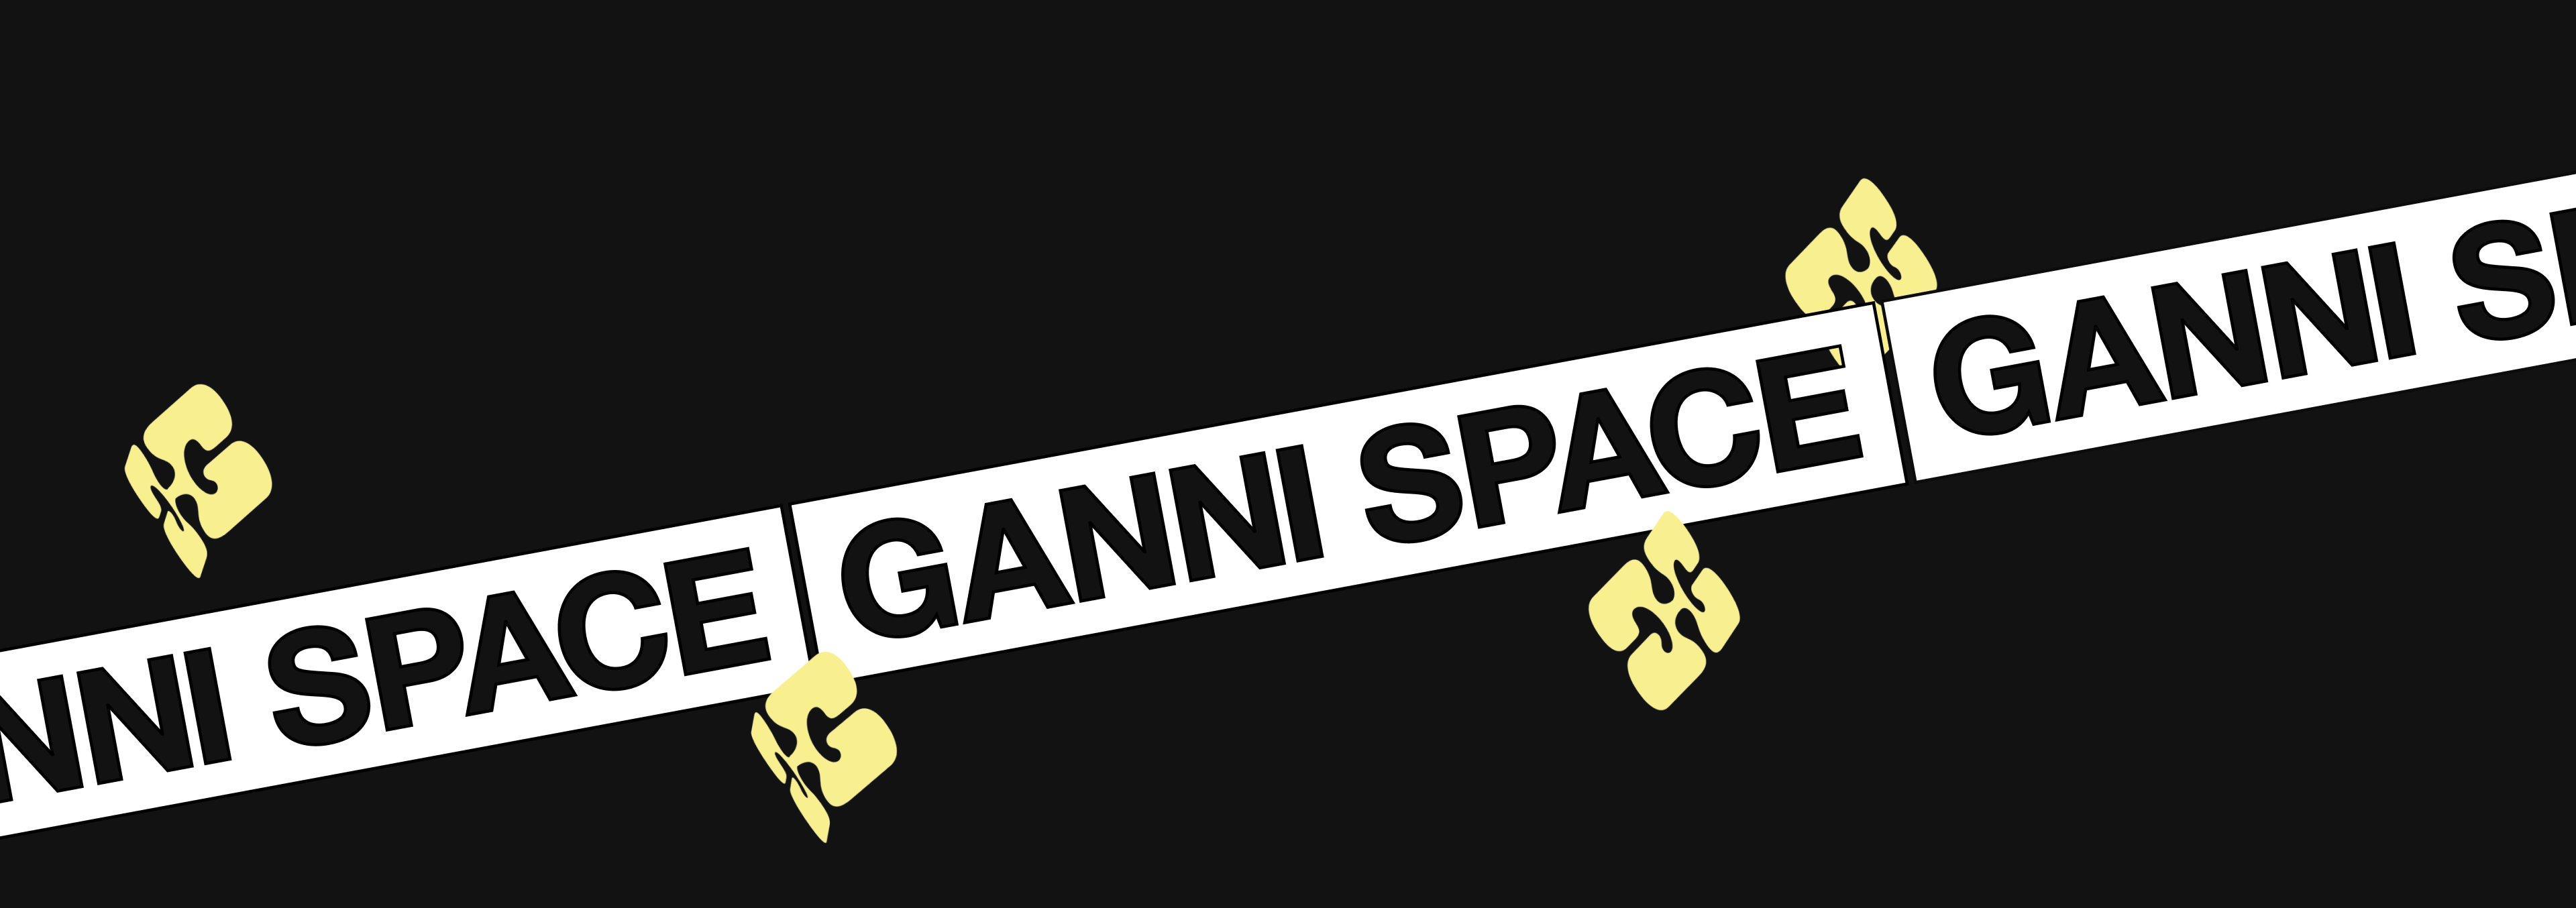 GANNI 2 0 case banner 